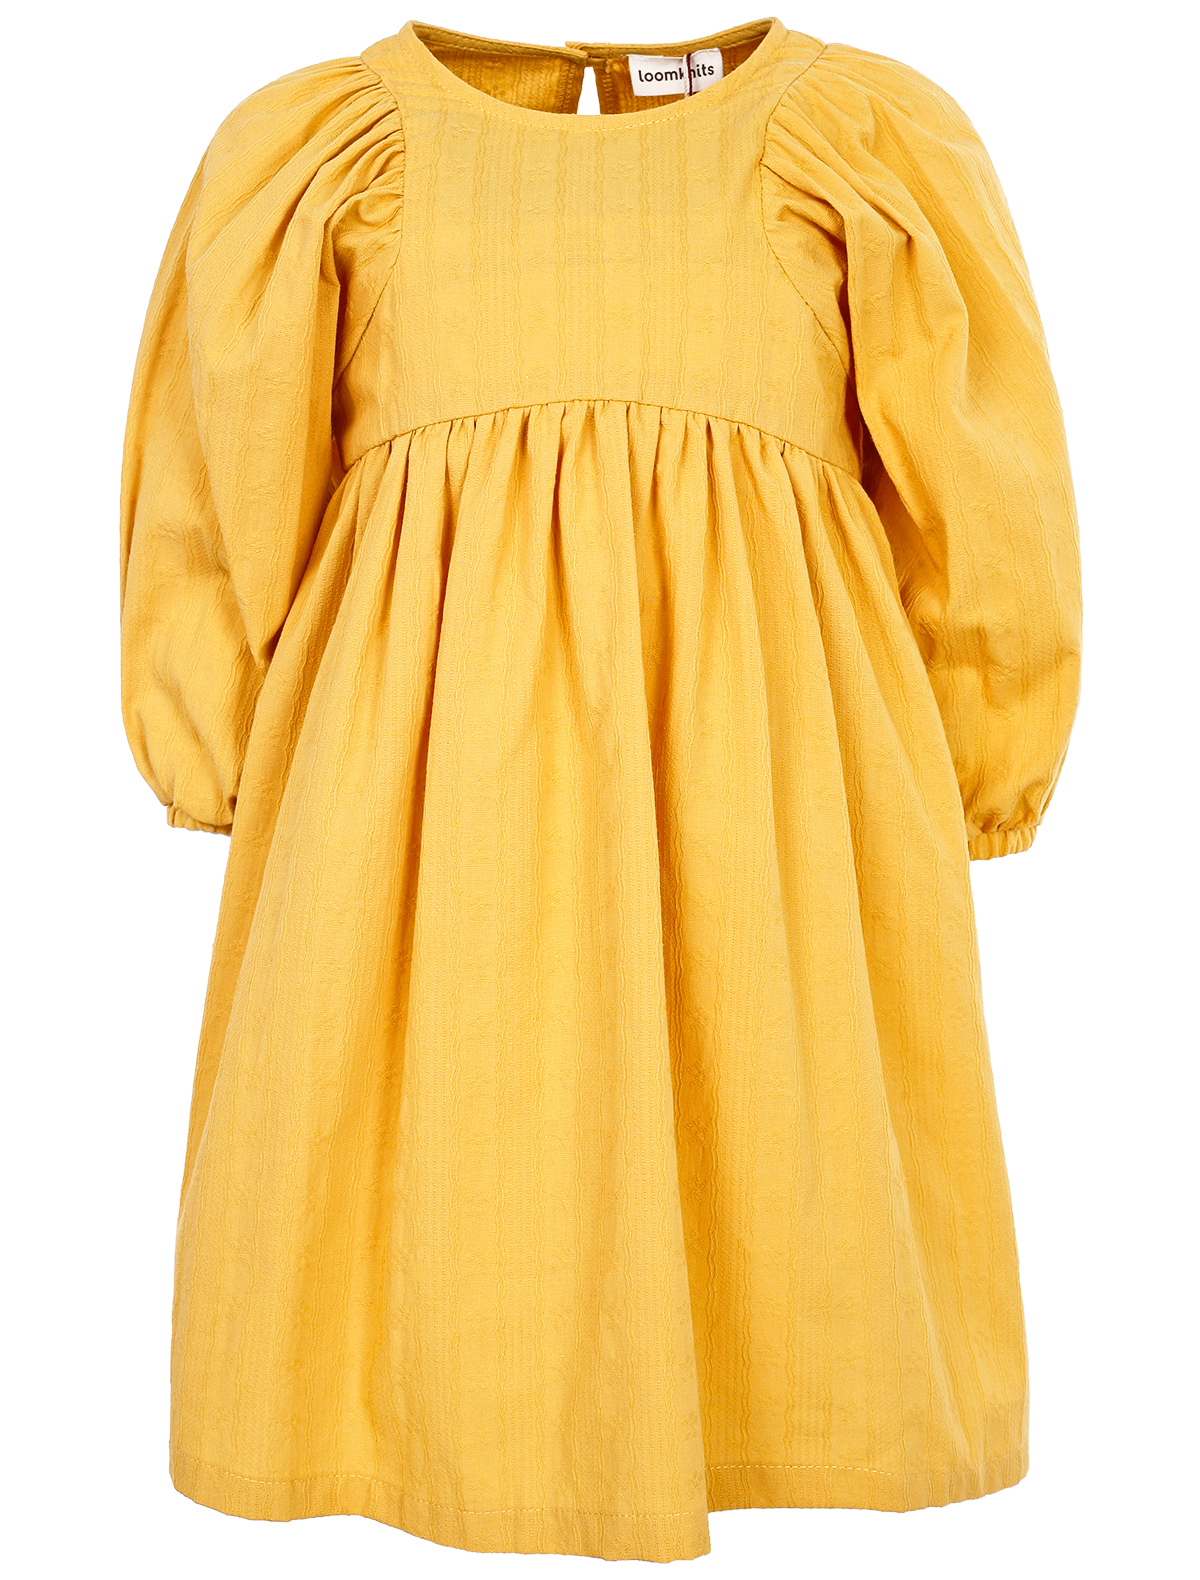 платье loom для девочки, желтое